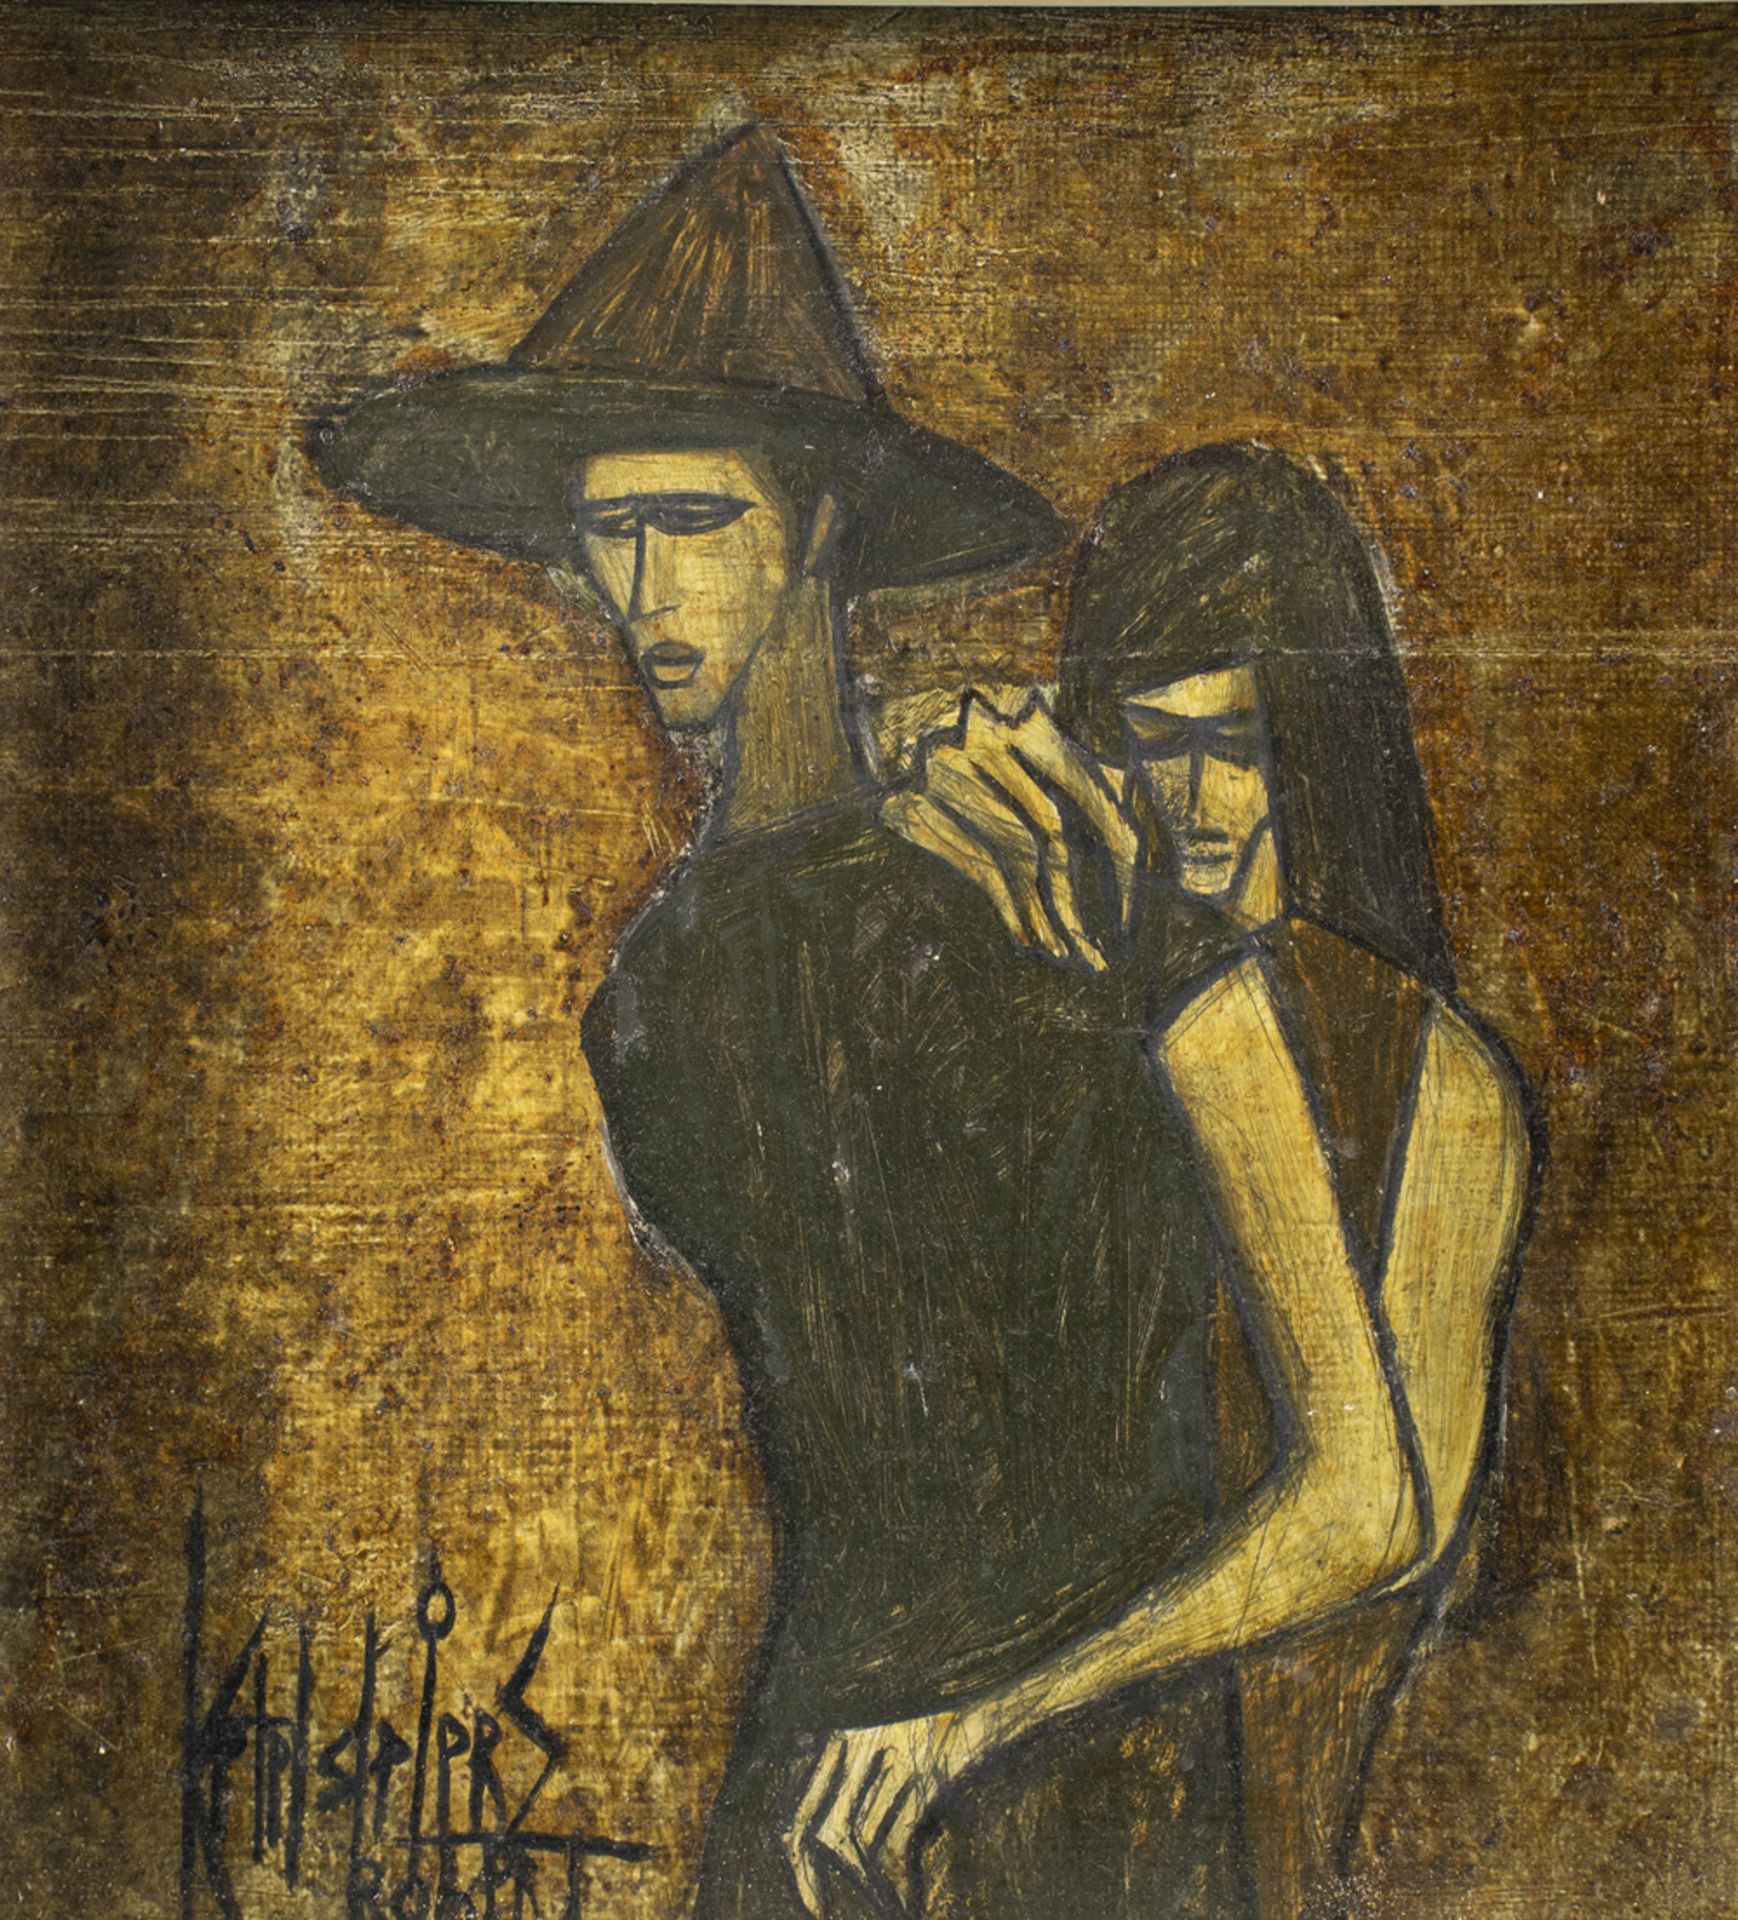 Robert KETELSLEGERS (*1939), 'Das Paar' / 'The couple'